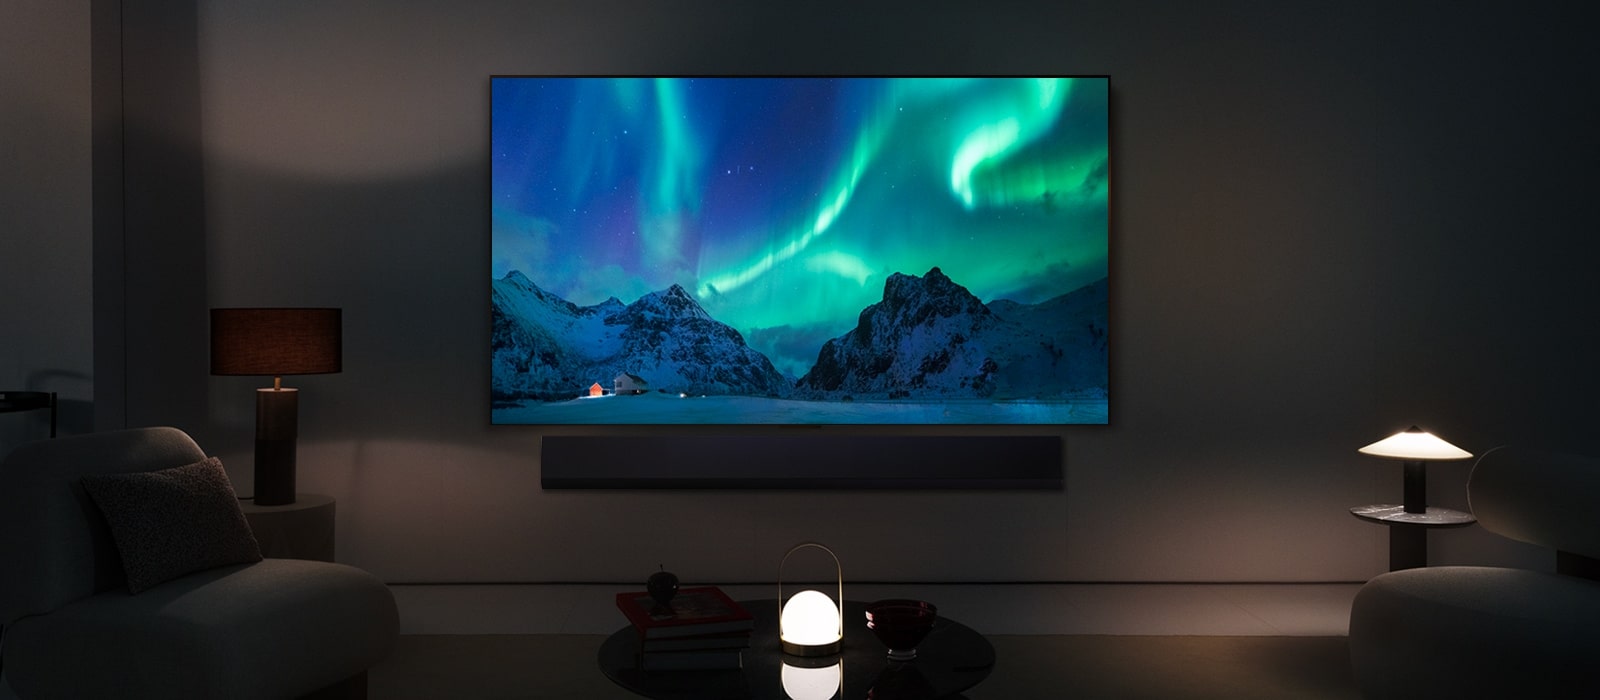 LG OLED TV y LG Soundbar en un moderno salón por la noche. La imagen en pantalla de la aurora boreal se muestra con los niveles de brillo ideales.